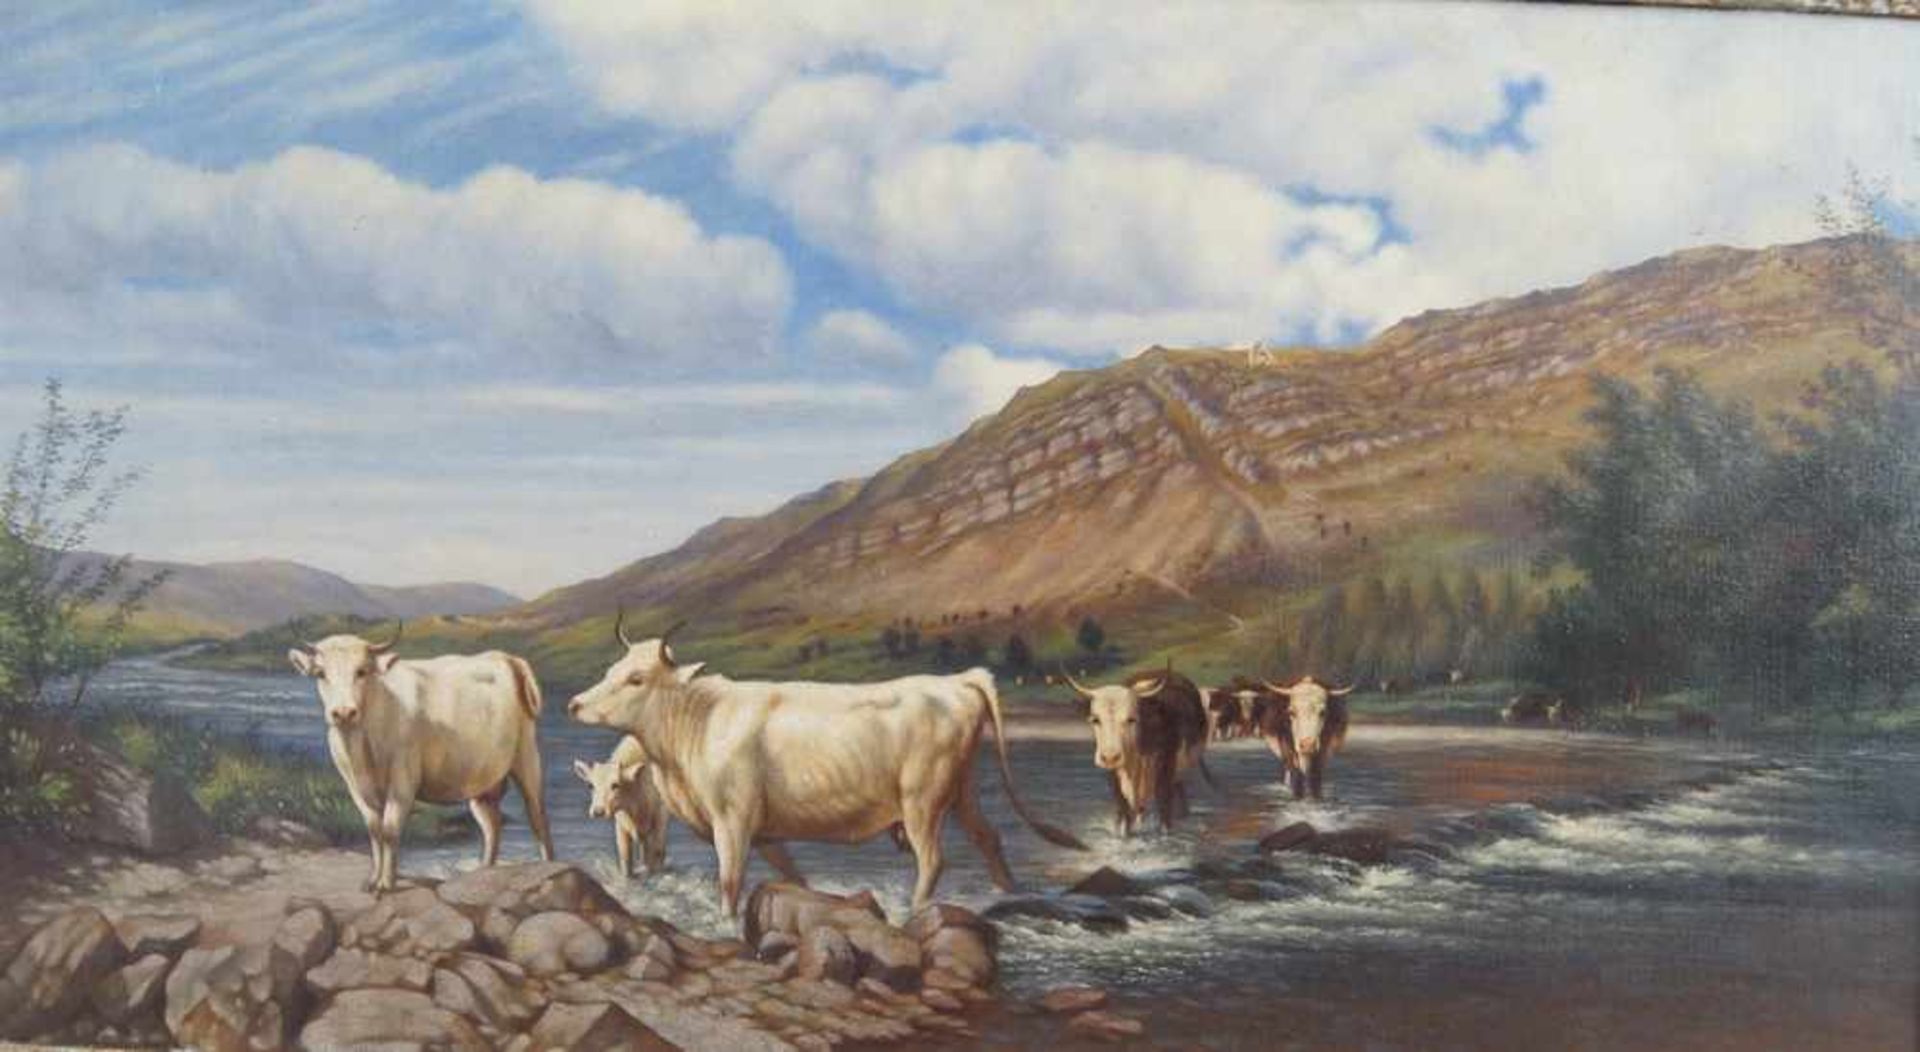 Kühe am Fluss, auf der Rückseite bezeichnet, Öl auf Leinwand, gerahmt, besch., 45x76cm- - -24.00 % - Bild 4 aus 7